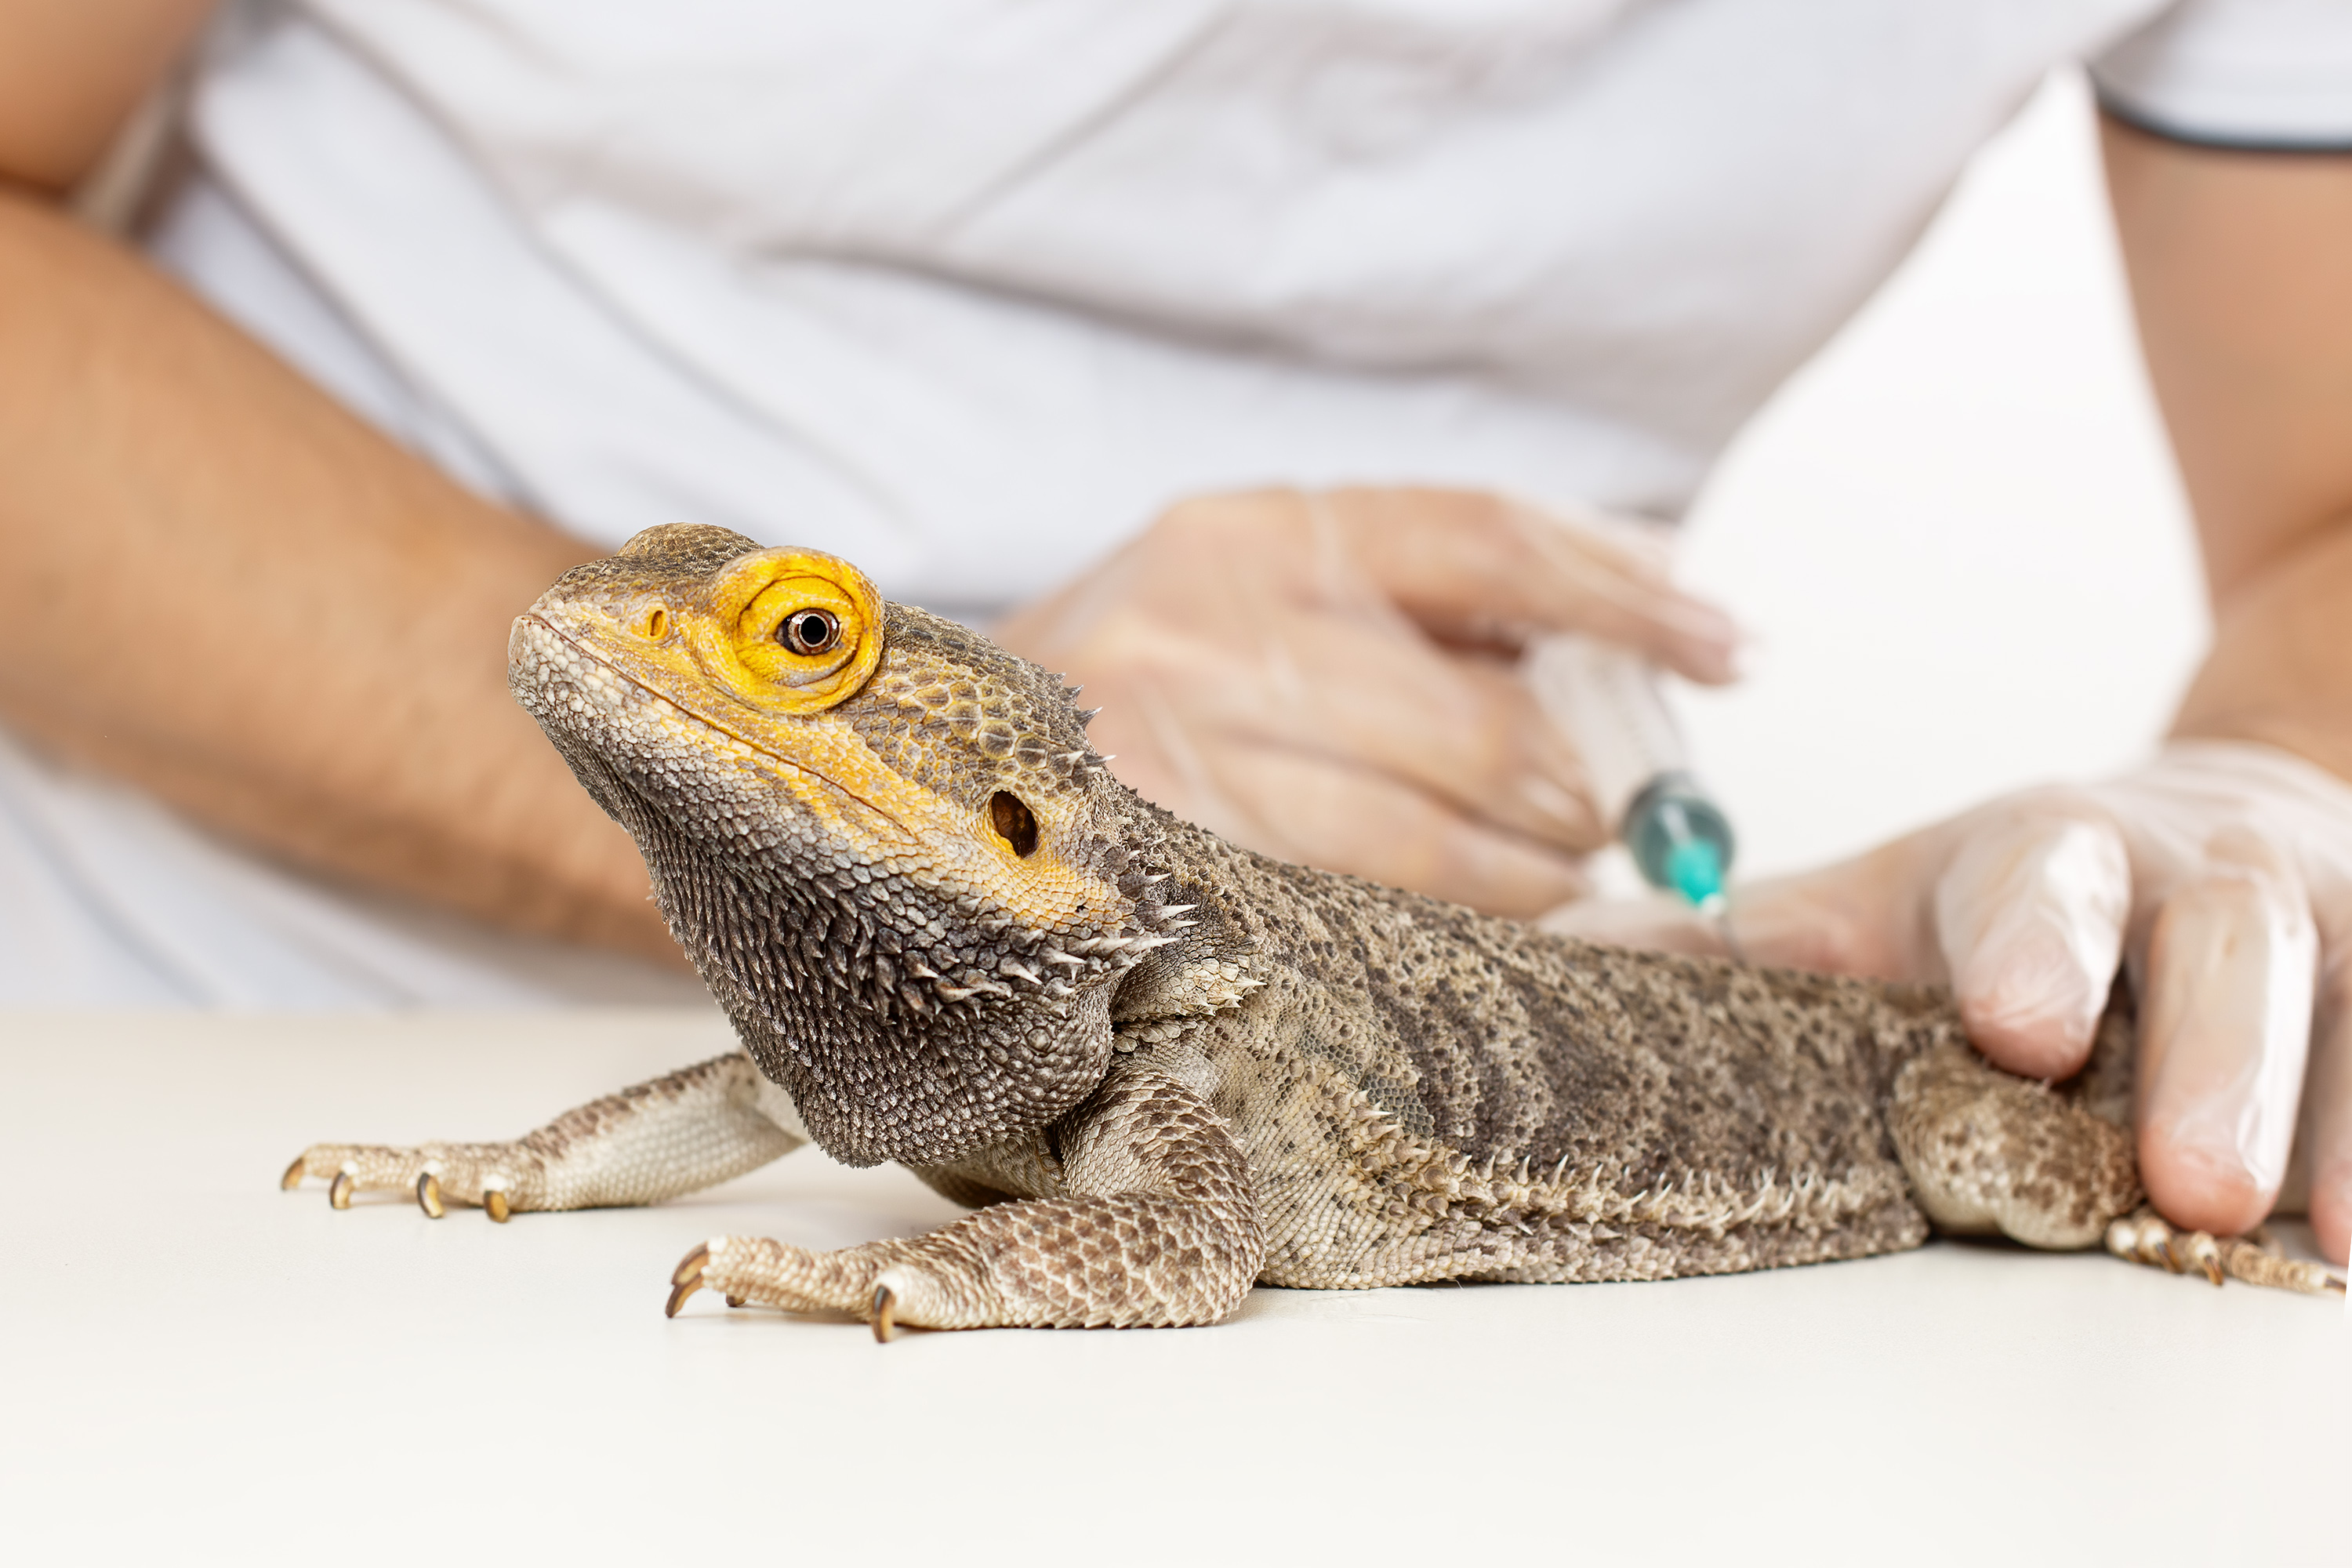 Médico veterinário examinando e aplicando injeção em uma Iguana